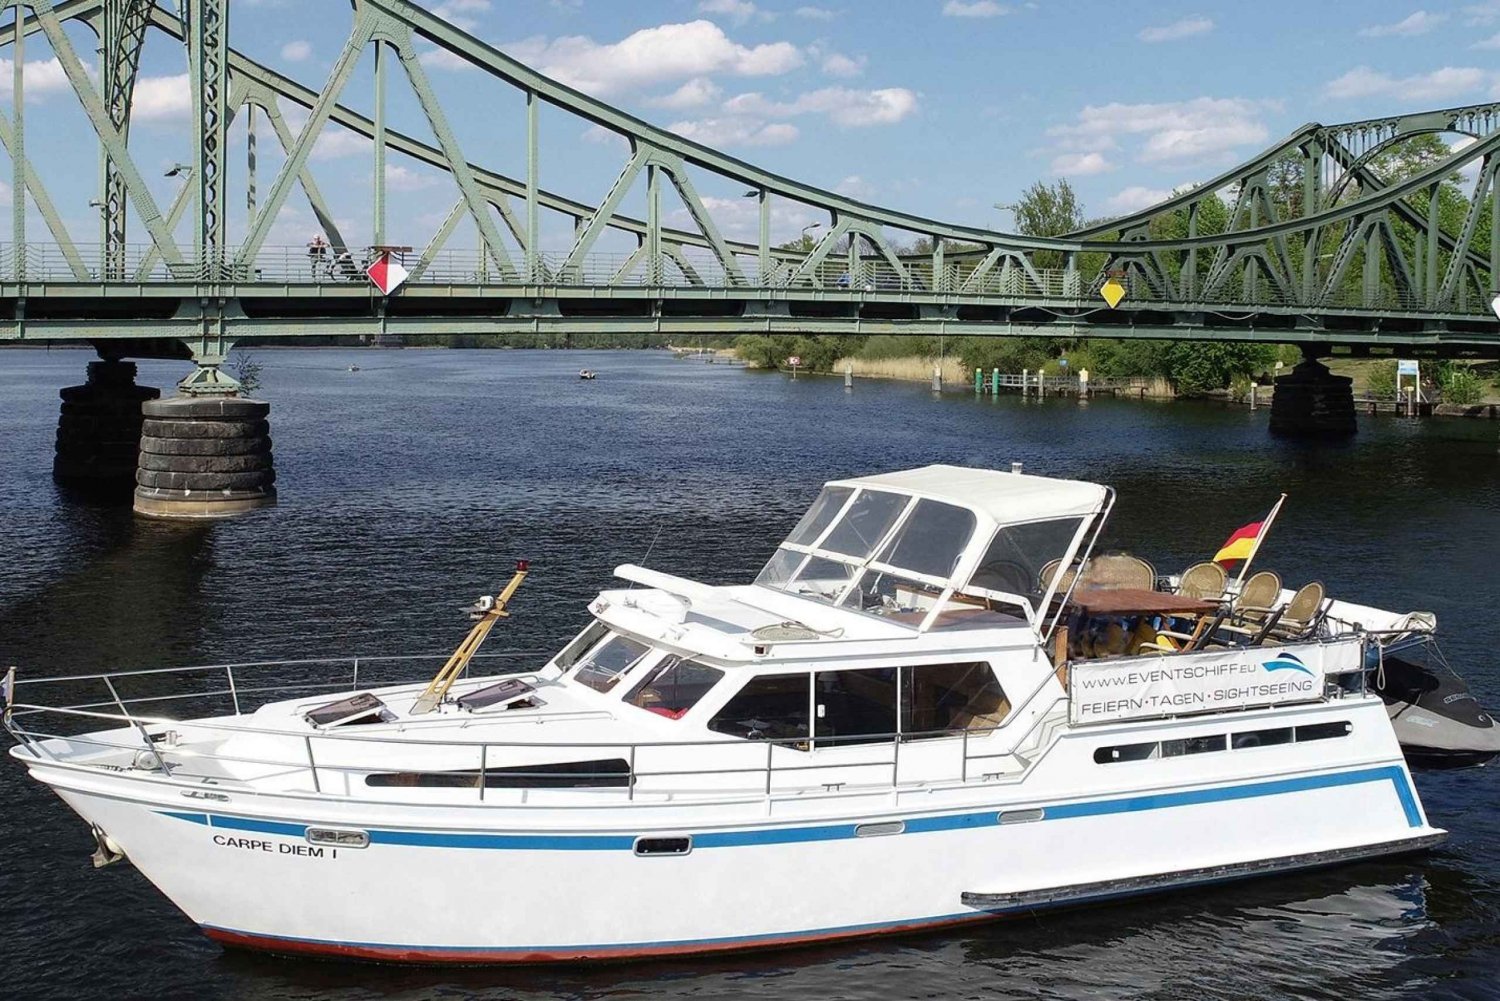 Potsdam : Croisière en bateau - Lacs de Berlin - Châteaux et nature